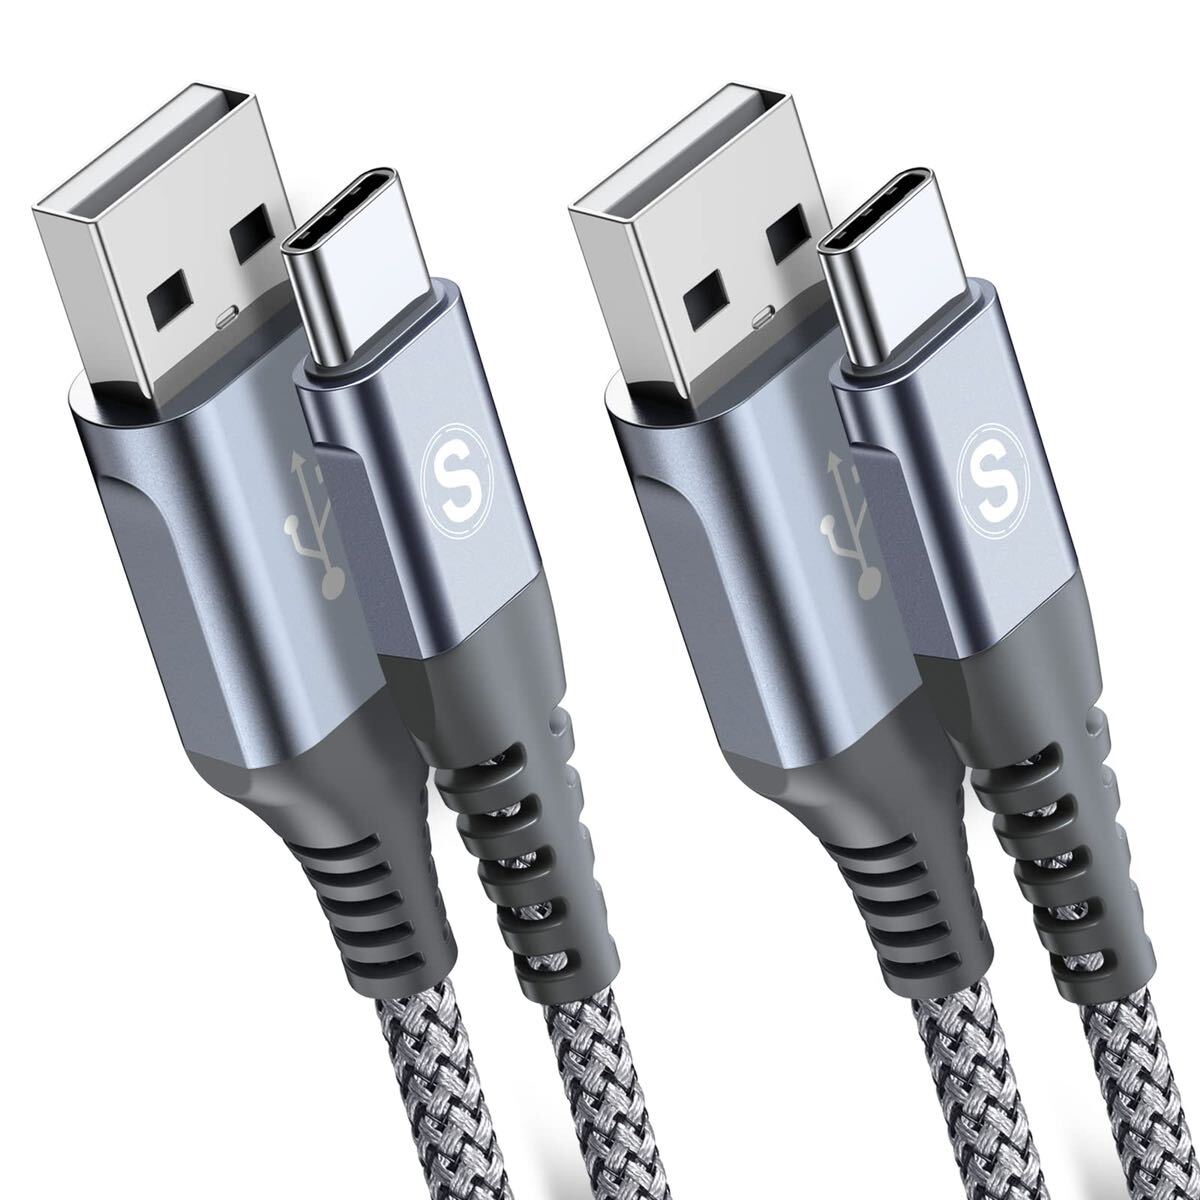 USB Type C ケーブル【2M/2本セット】Sweguard USB-C & USB-A 3.1A USB C ケーブル【QC3.0対応 急速充電】 の画像1